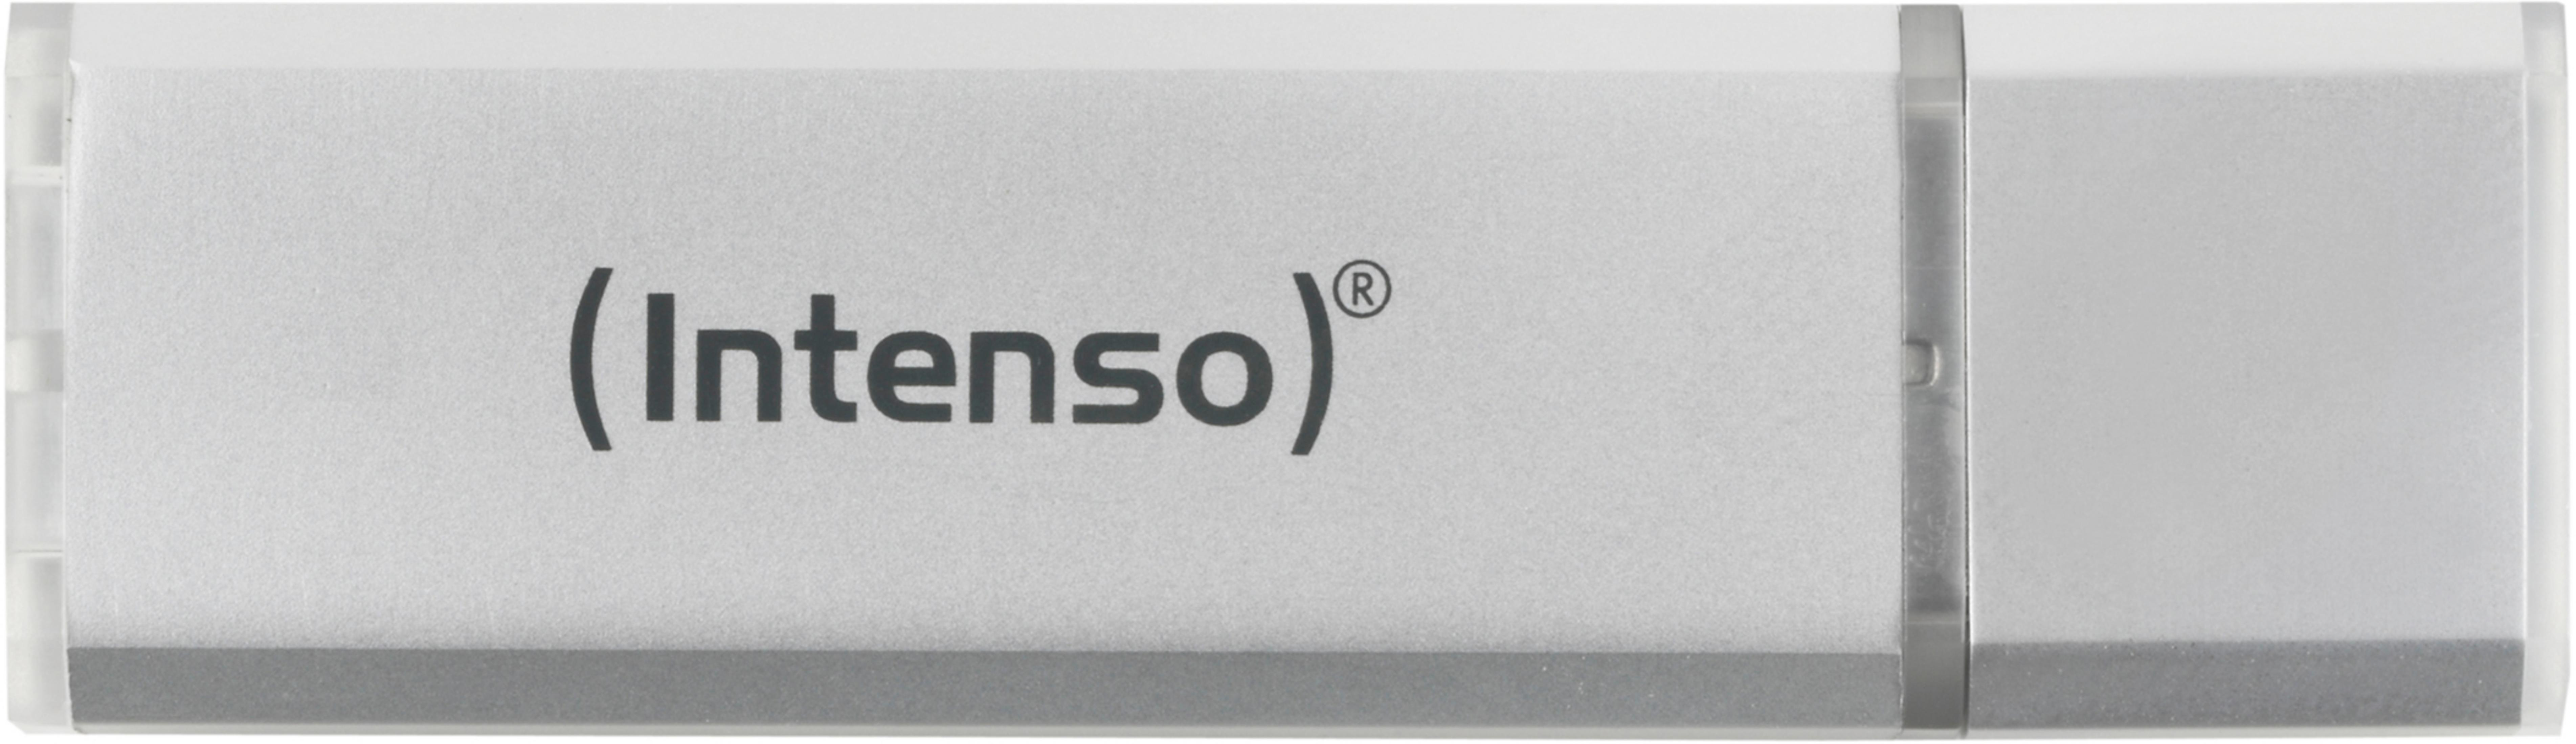 INTENSO 3521452 4GB (Silber, GB) LINE ALU USB-Stick SILBER 4 INT